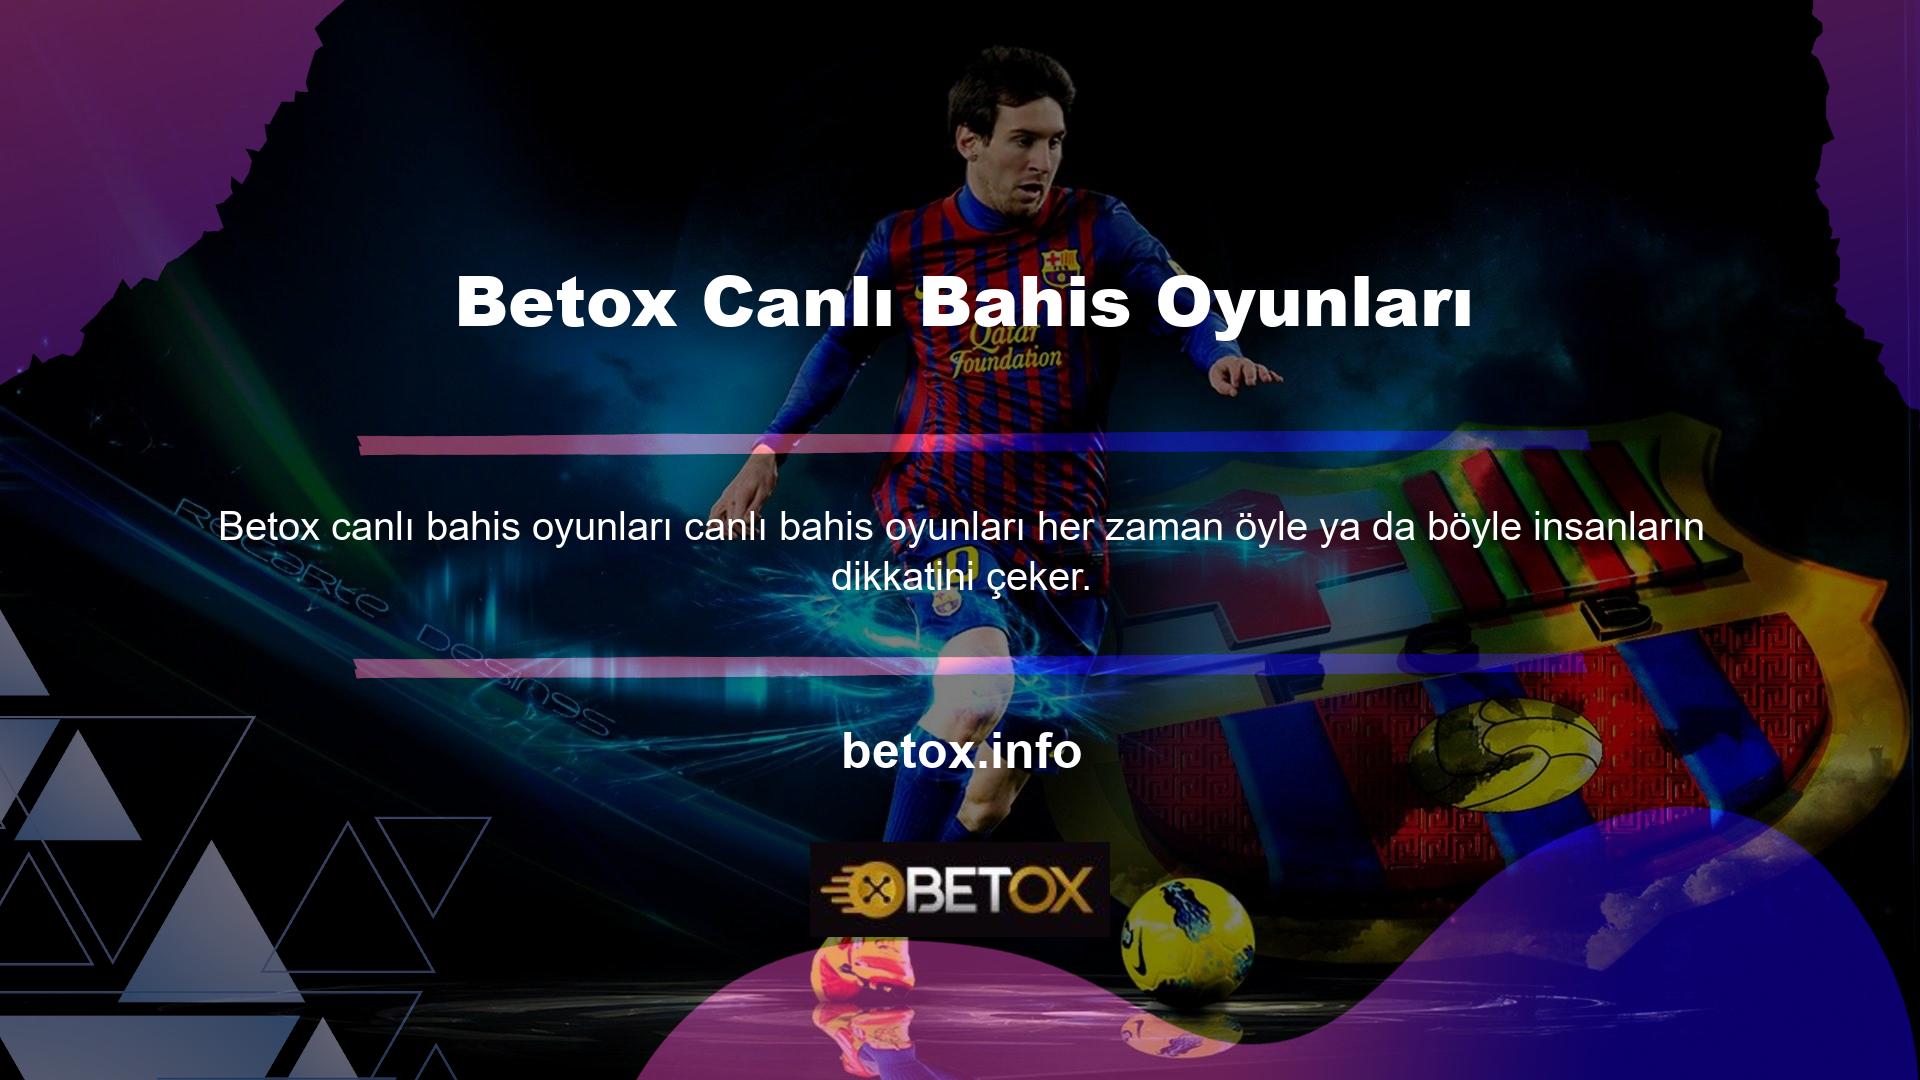 Betox web sitesi giriş ortaklarıyla ticaret yapan spor tutkunları, canlı bahis seçenekleriyle şimdiden harika vakit geçiriyor